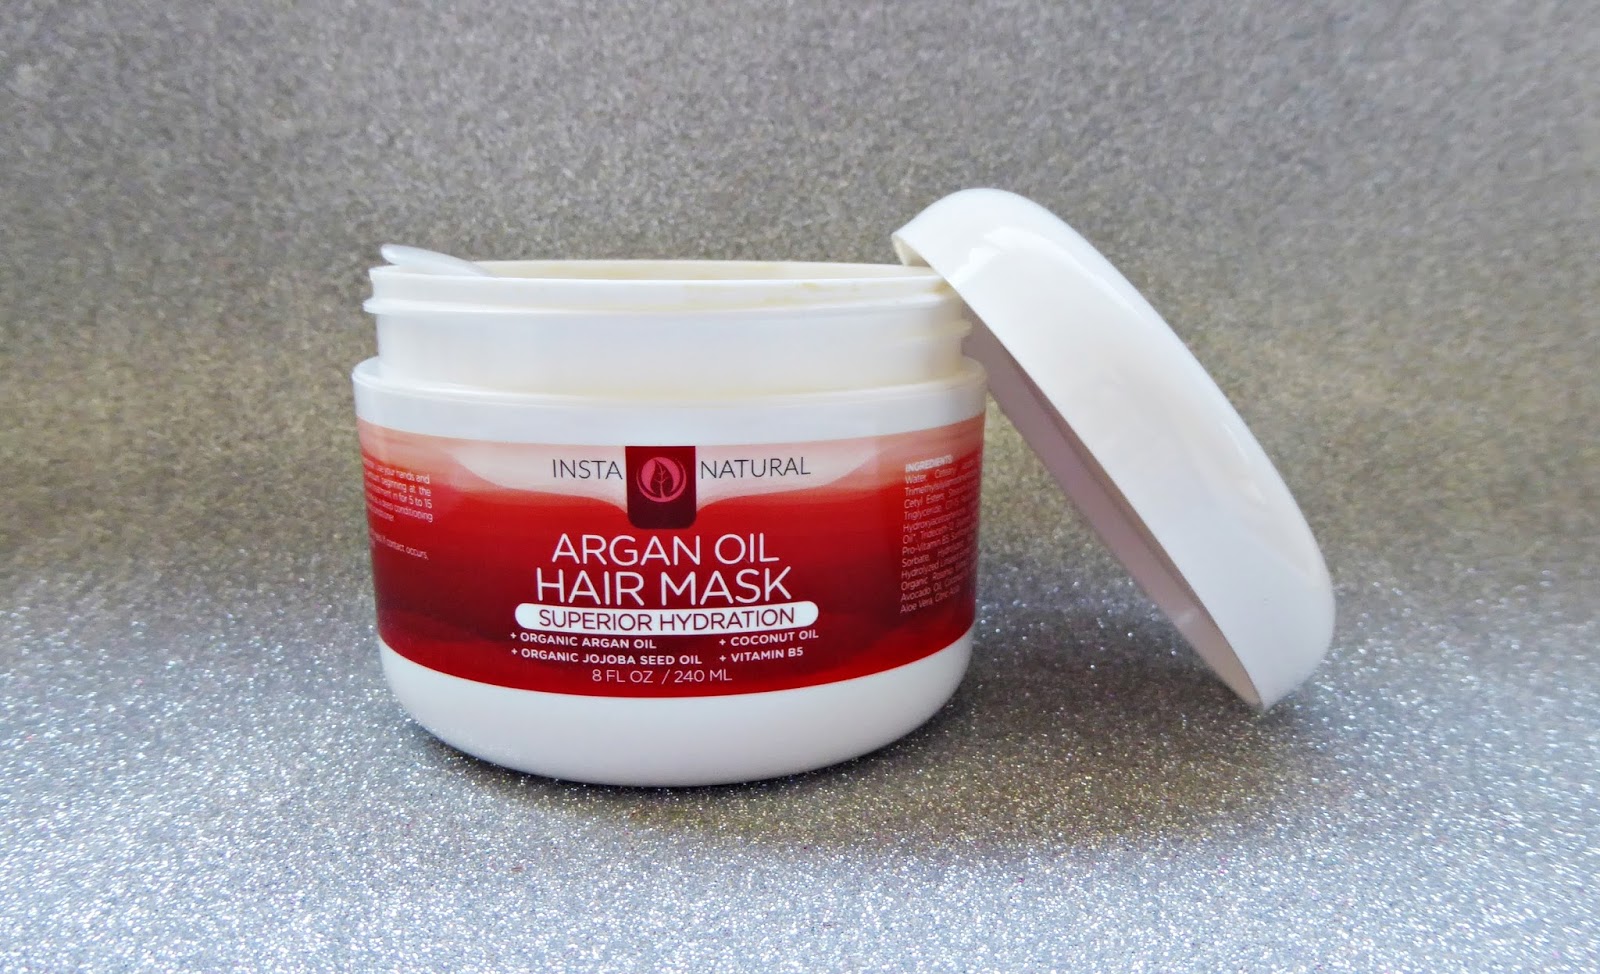 iHerb: Argan oil hair mask de Insta Natural, una mascarilla hidratante con aceites orgánicos